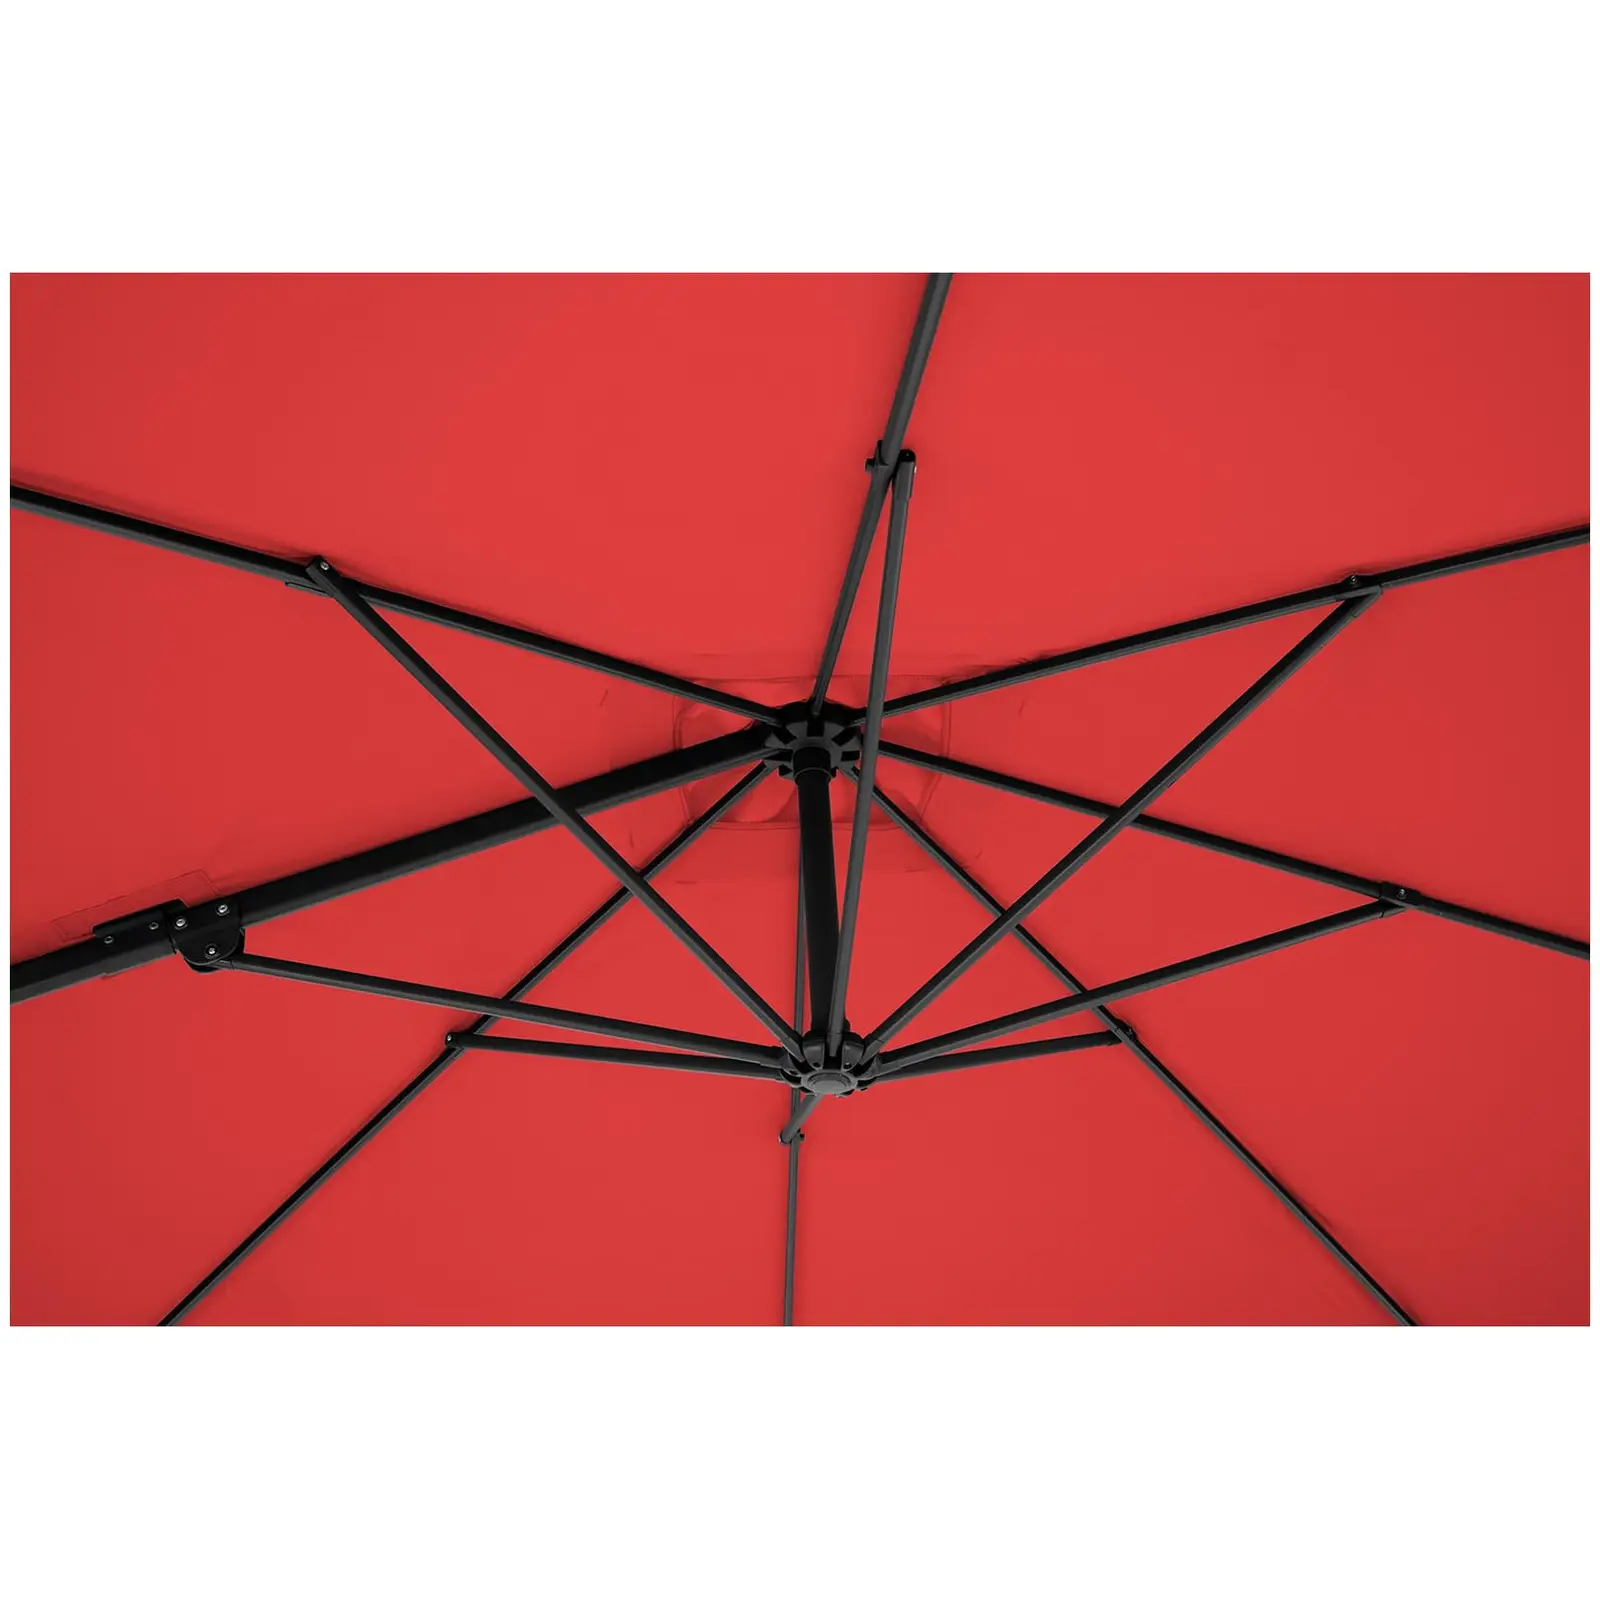 Boční slunečník - červený - čtvercový - 250 x 250 cm - otočný